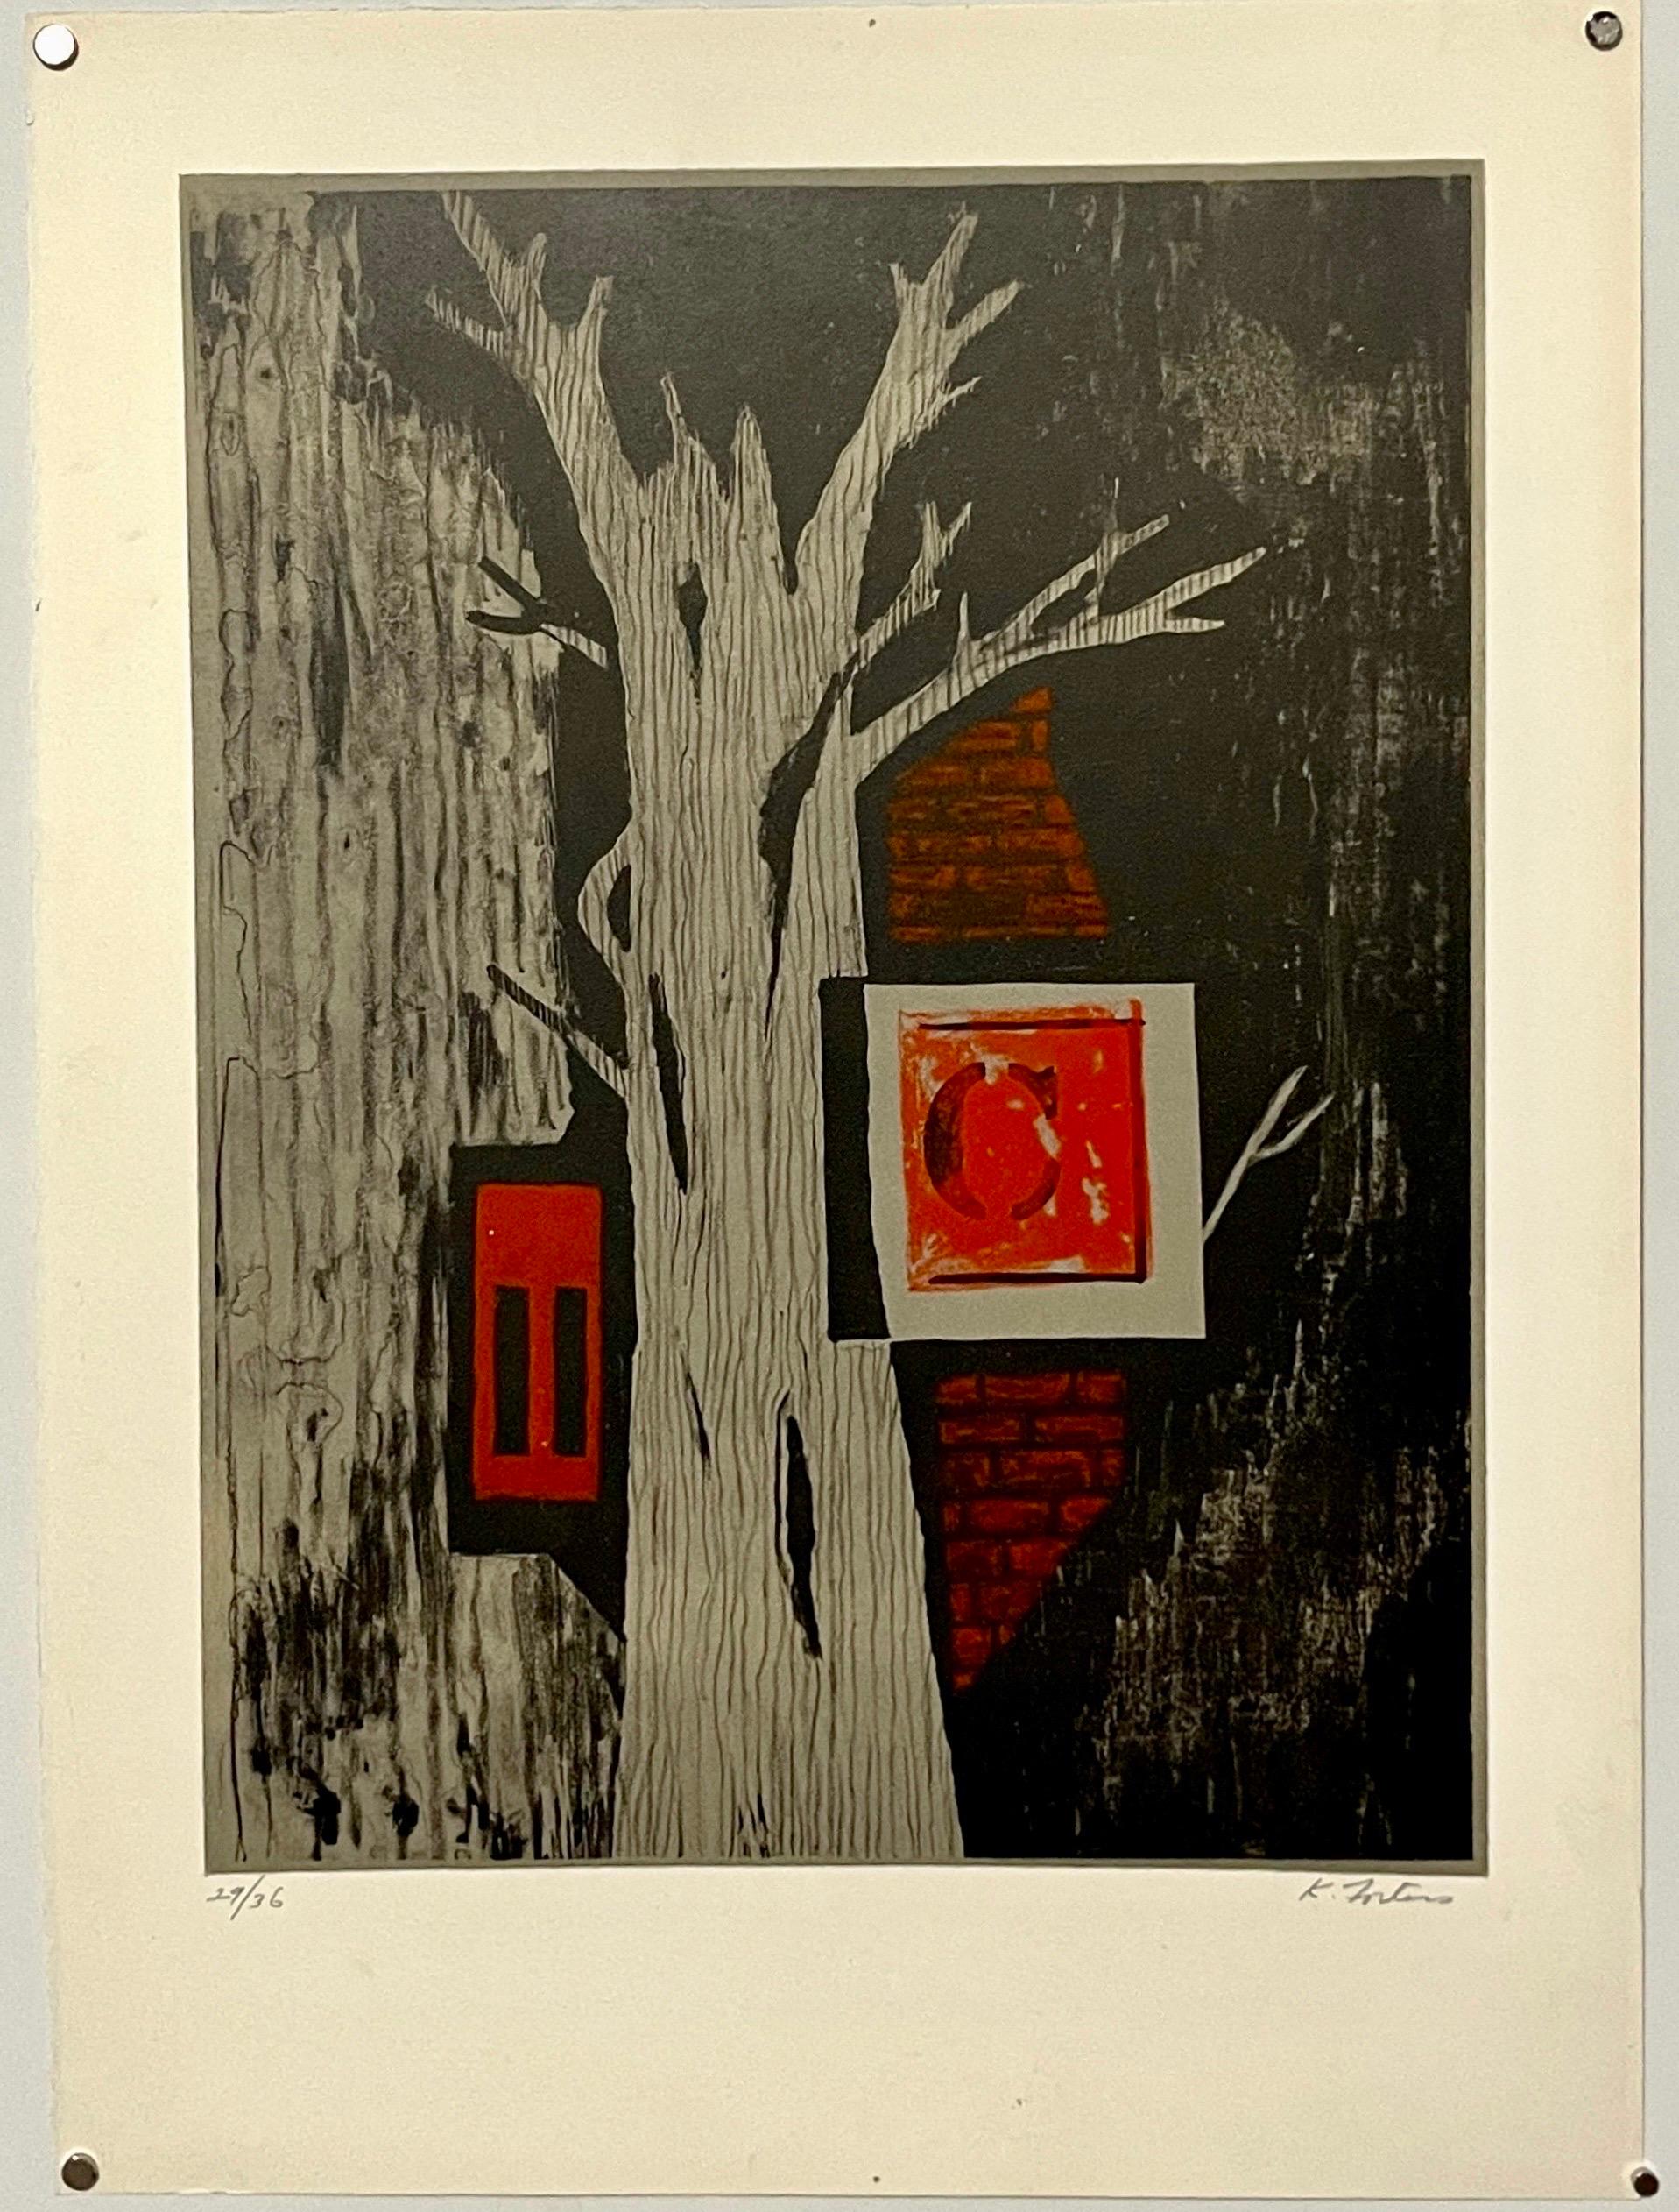 Karl Eugene Fortess (1907-1993) 
Lithographies originales en couleur sur papier BFK Rives, 
1966, signé à la main et numéroté 29/36 au crayon,
Taille de la feuille  20,5 x 15 pouces.

Karl E. Fortess (1907-1993) était un peintre, graveur et